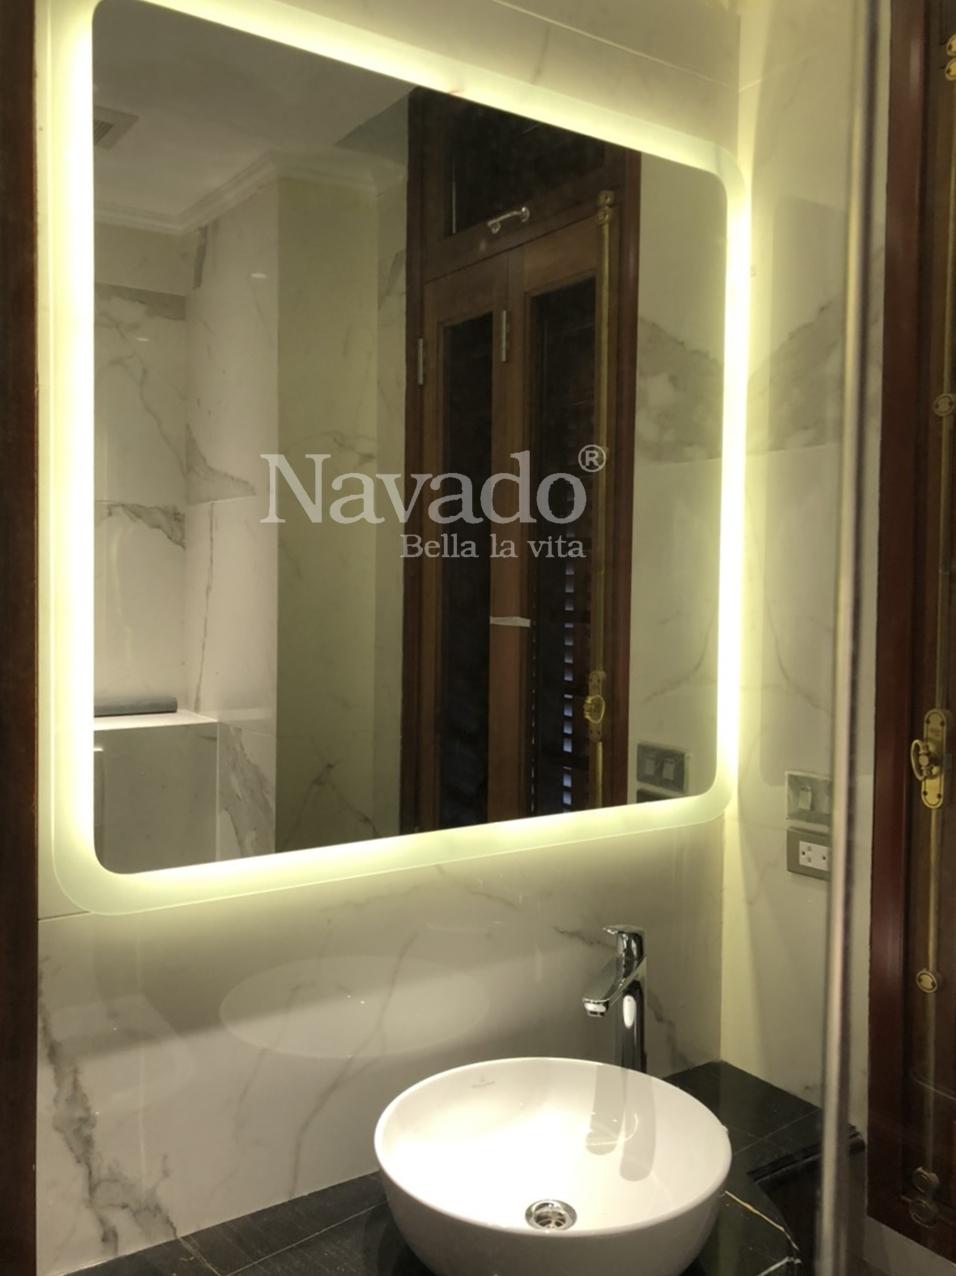 Lắp gương phòng tắm đèn led Thanh Hóa Navado: Bạn đang có nhu cầu lắp đặt gương phòng tắm đèn LED tại Thanh Hóa? Navado sẽ giúp bạn giải quyết vấn đề này bằng dịch vụ chuyên nghiệp và chất lượng. Gương Navado đèn LED là lựa chọn tiện ích và hiện đại cho ngôi nhà của bạn.